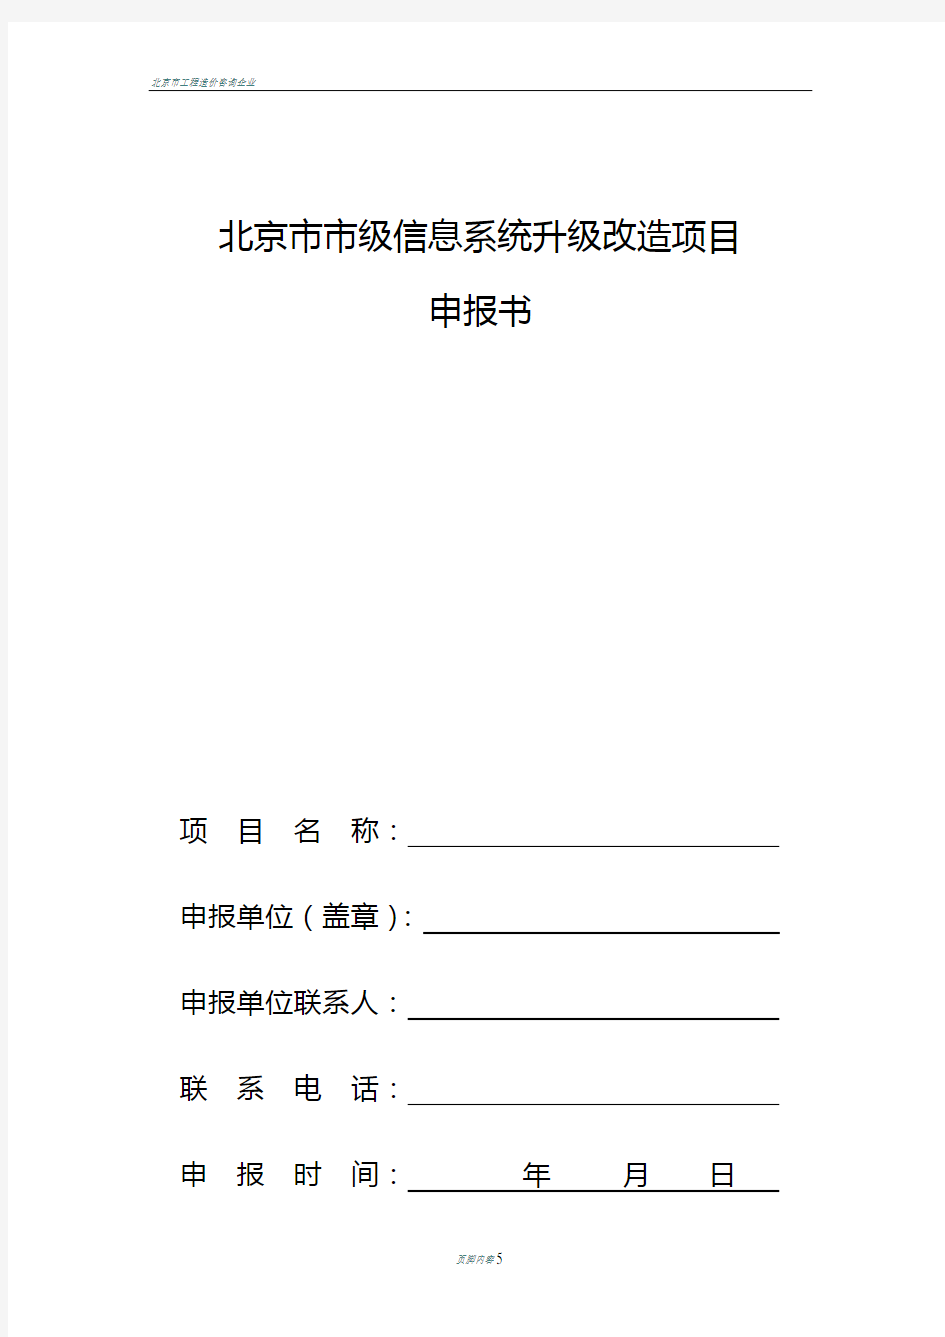 北京市市级信息系统升级改造项目申报书模板